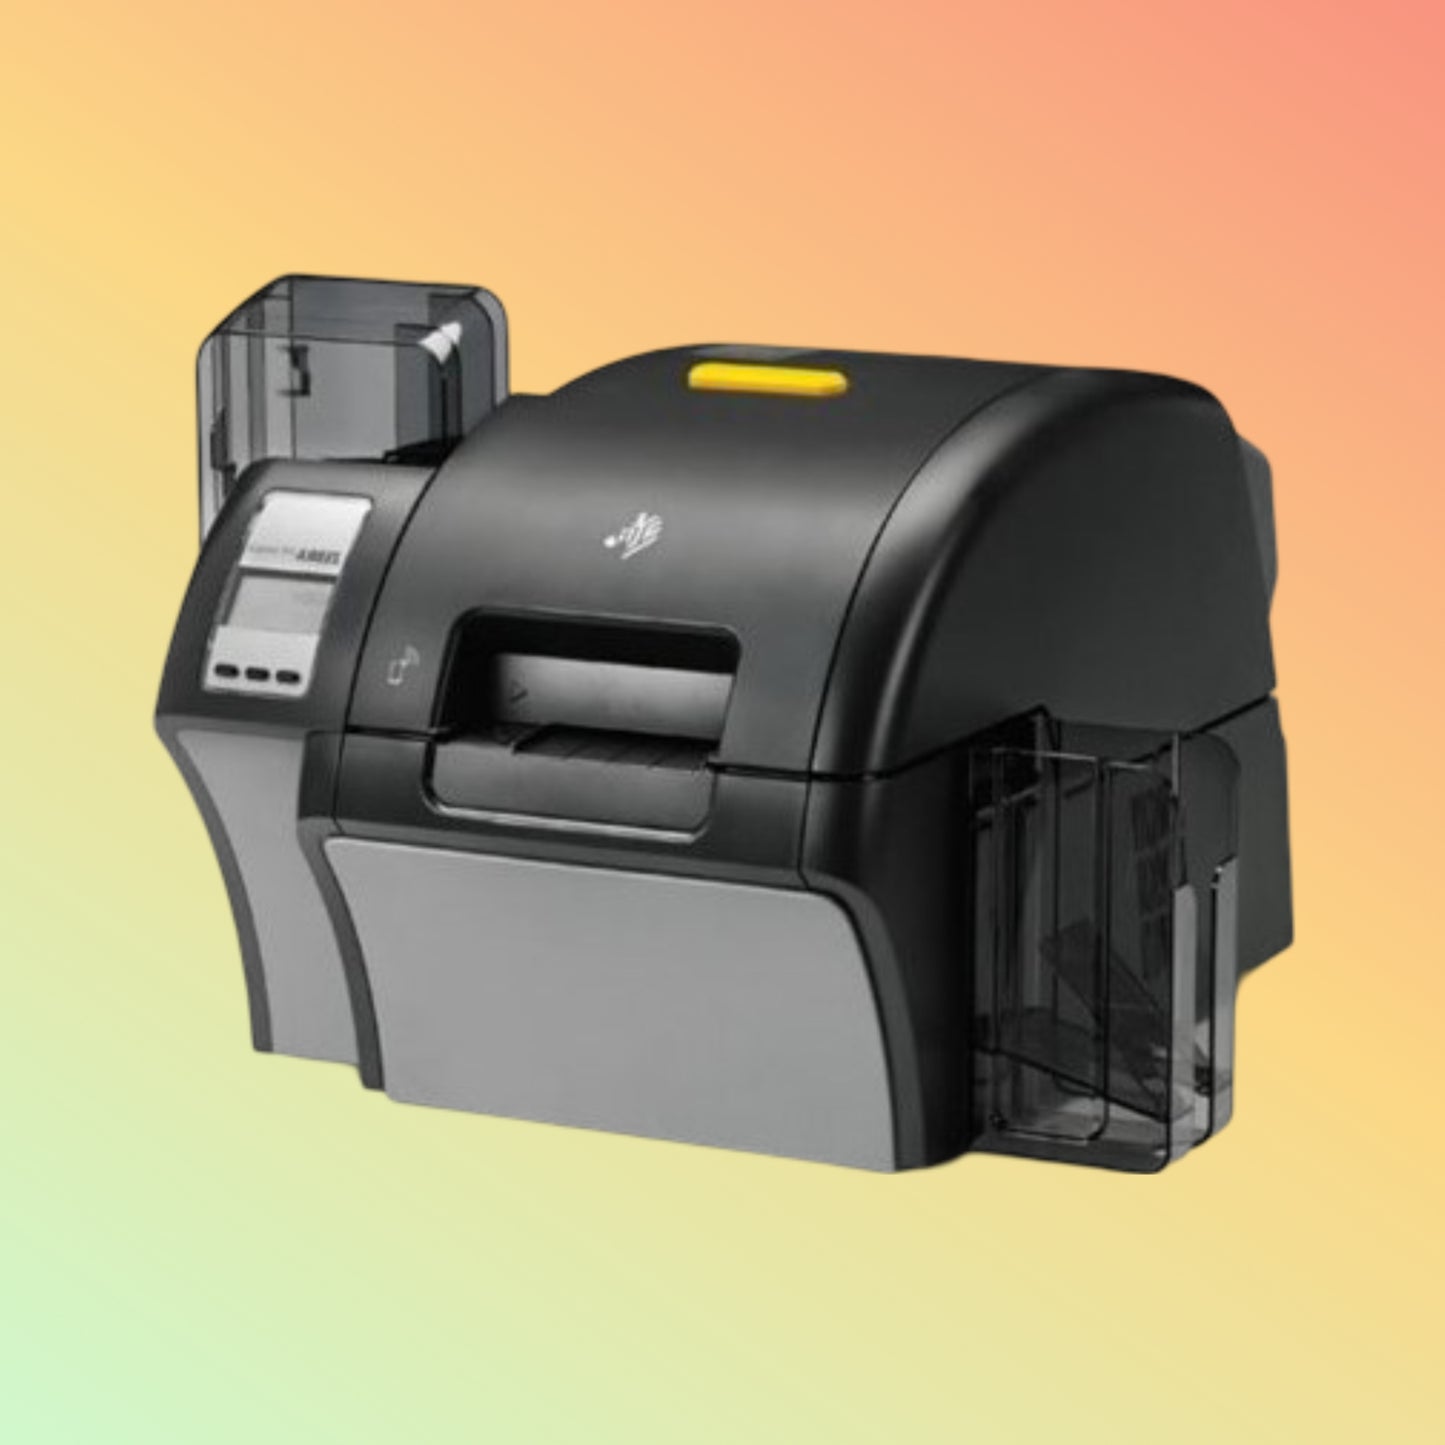 Zebra Z94-000C0000EM00: ZXP 9 Dual-Sided ID Card Printer with Lamination